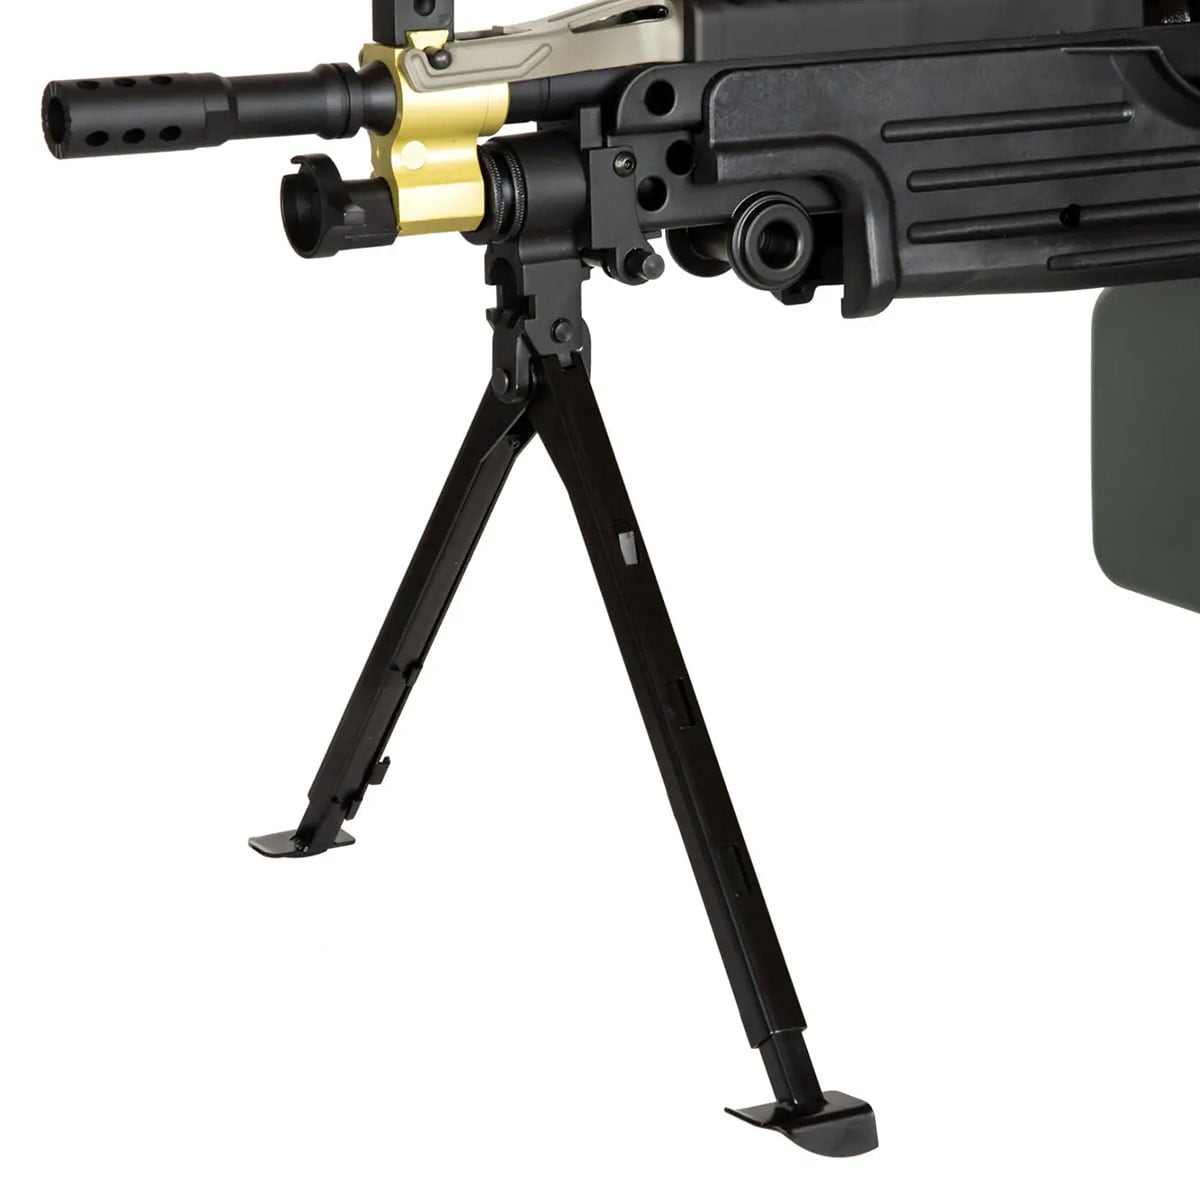 Кулемет AEG Specna Arms SA-249 PARA EDGE - Black